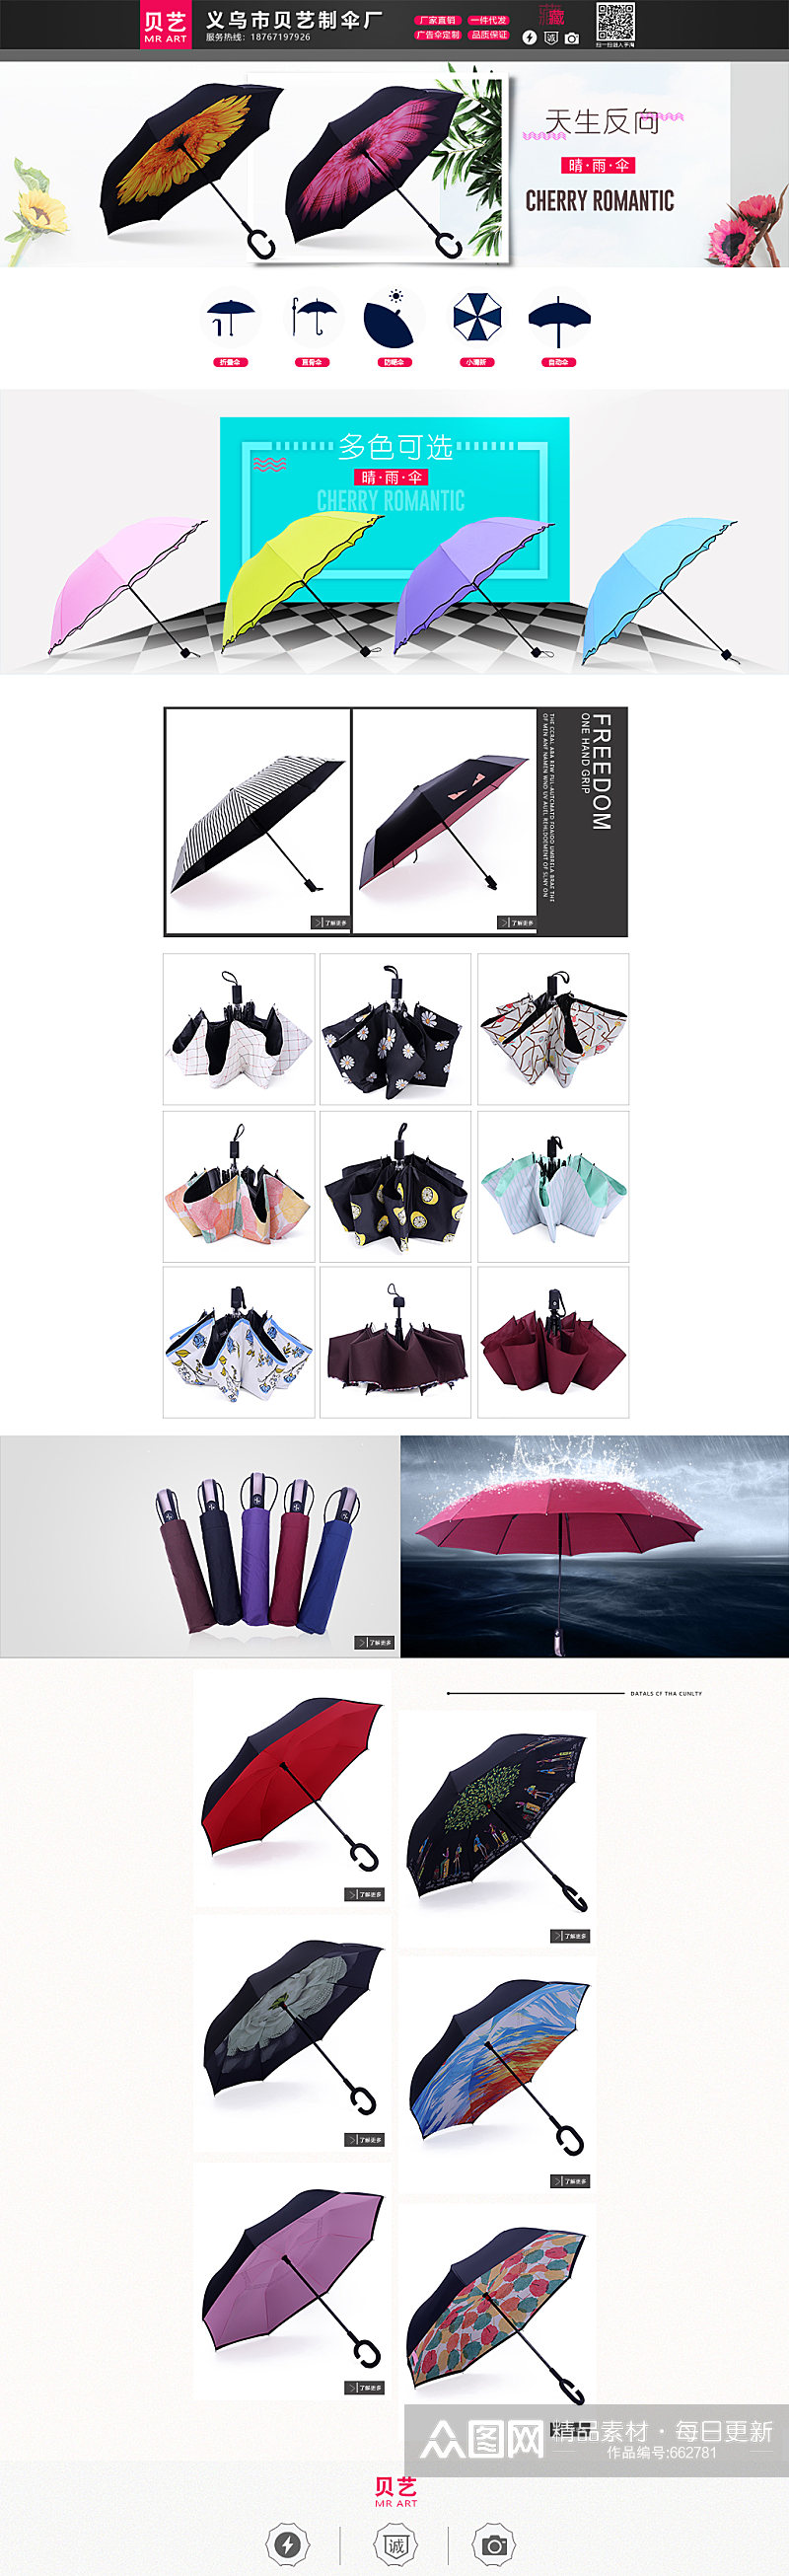 雨伞促销活动首页设计素材